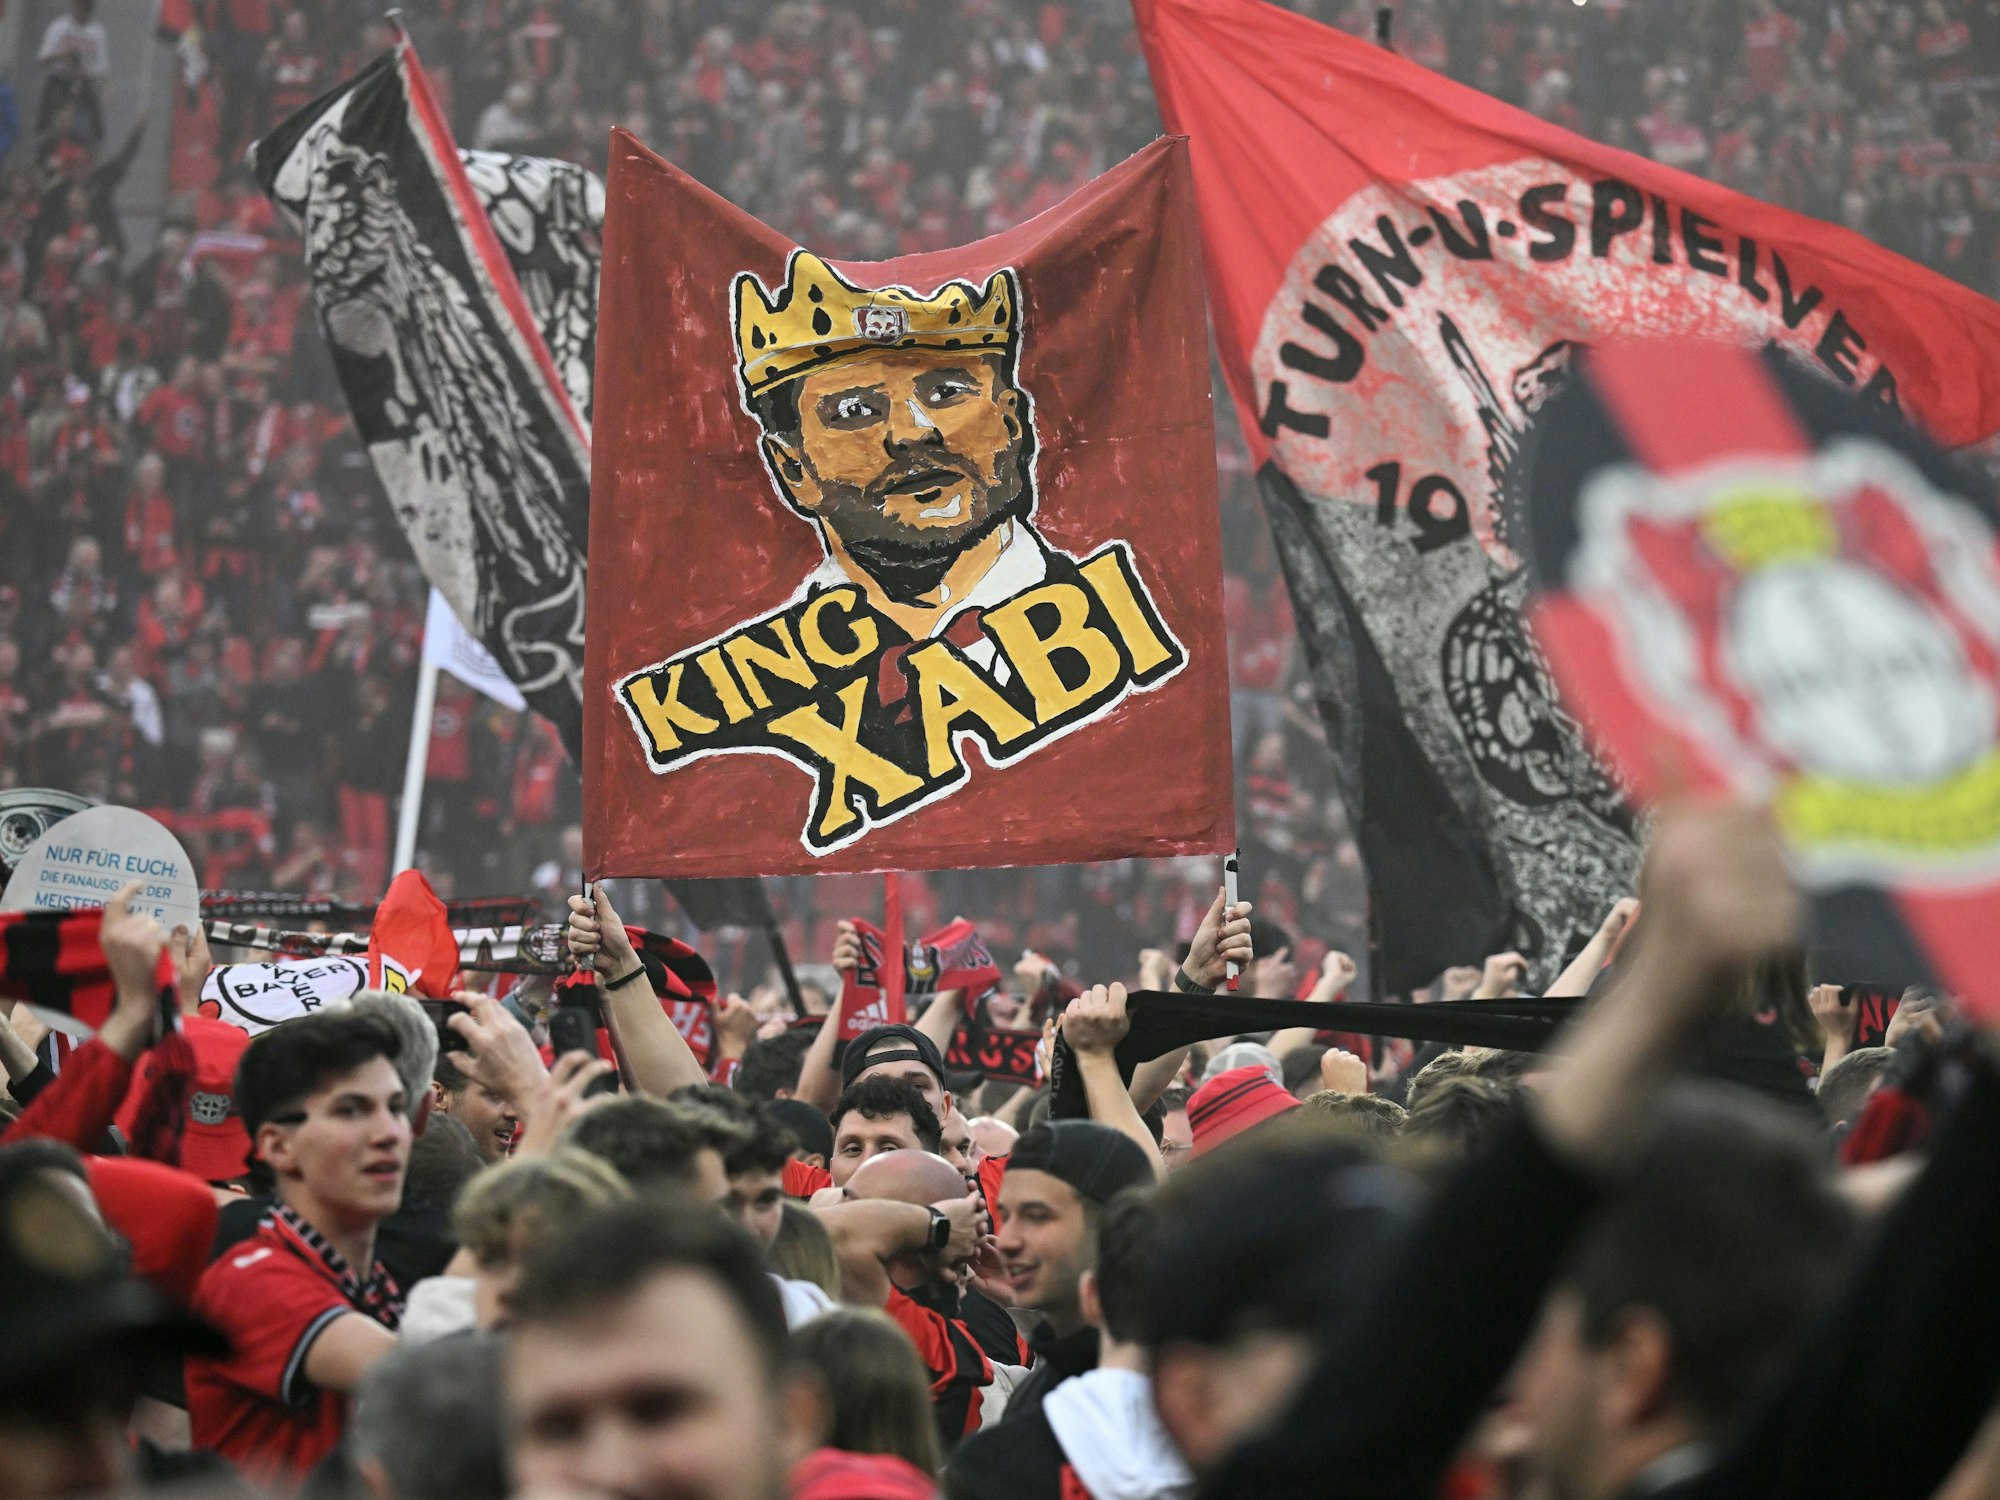 Leverkusener Fans haben nach dem Sieg ihrer Mannschaft das Spielfeld gestürmt und halten eine Fahne mit der Aufschrift "King Xabi" für Leverkusens Trainer Xabi Alonso.